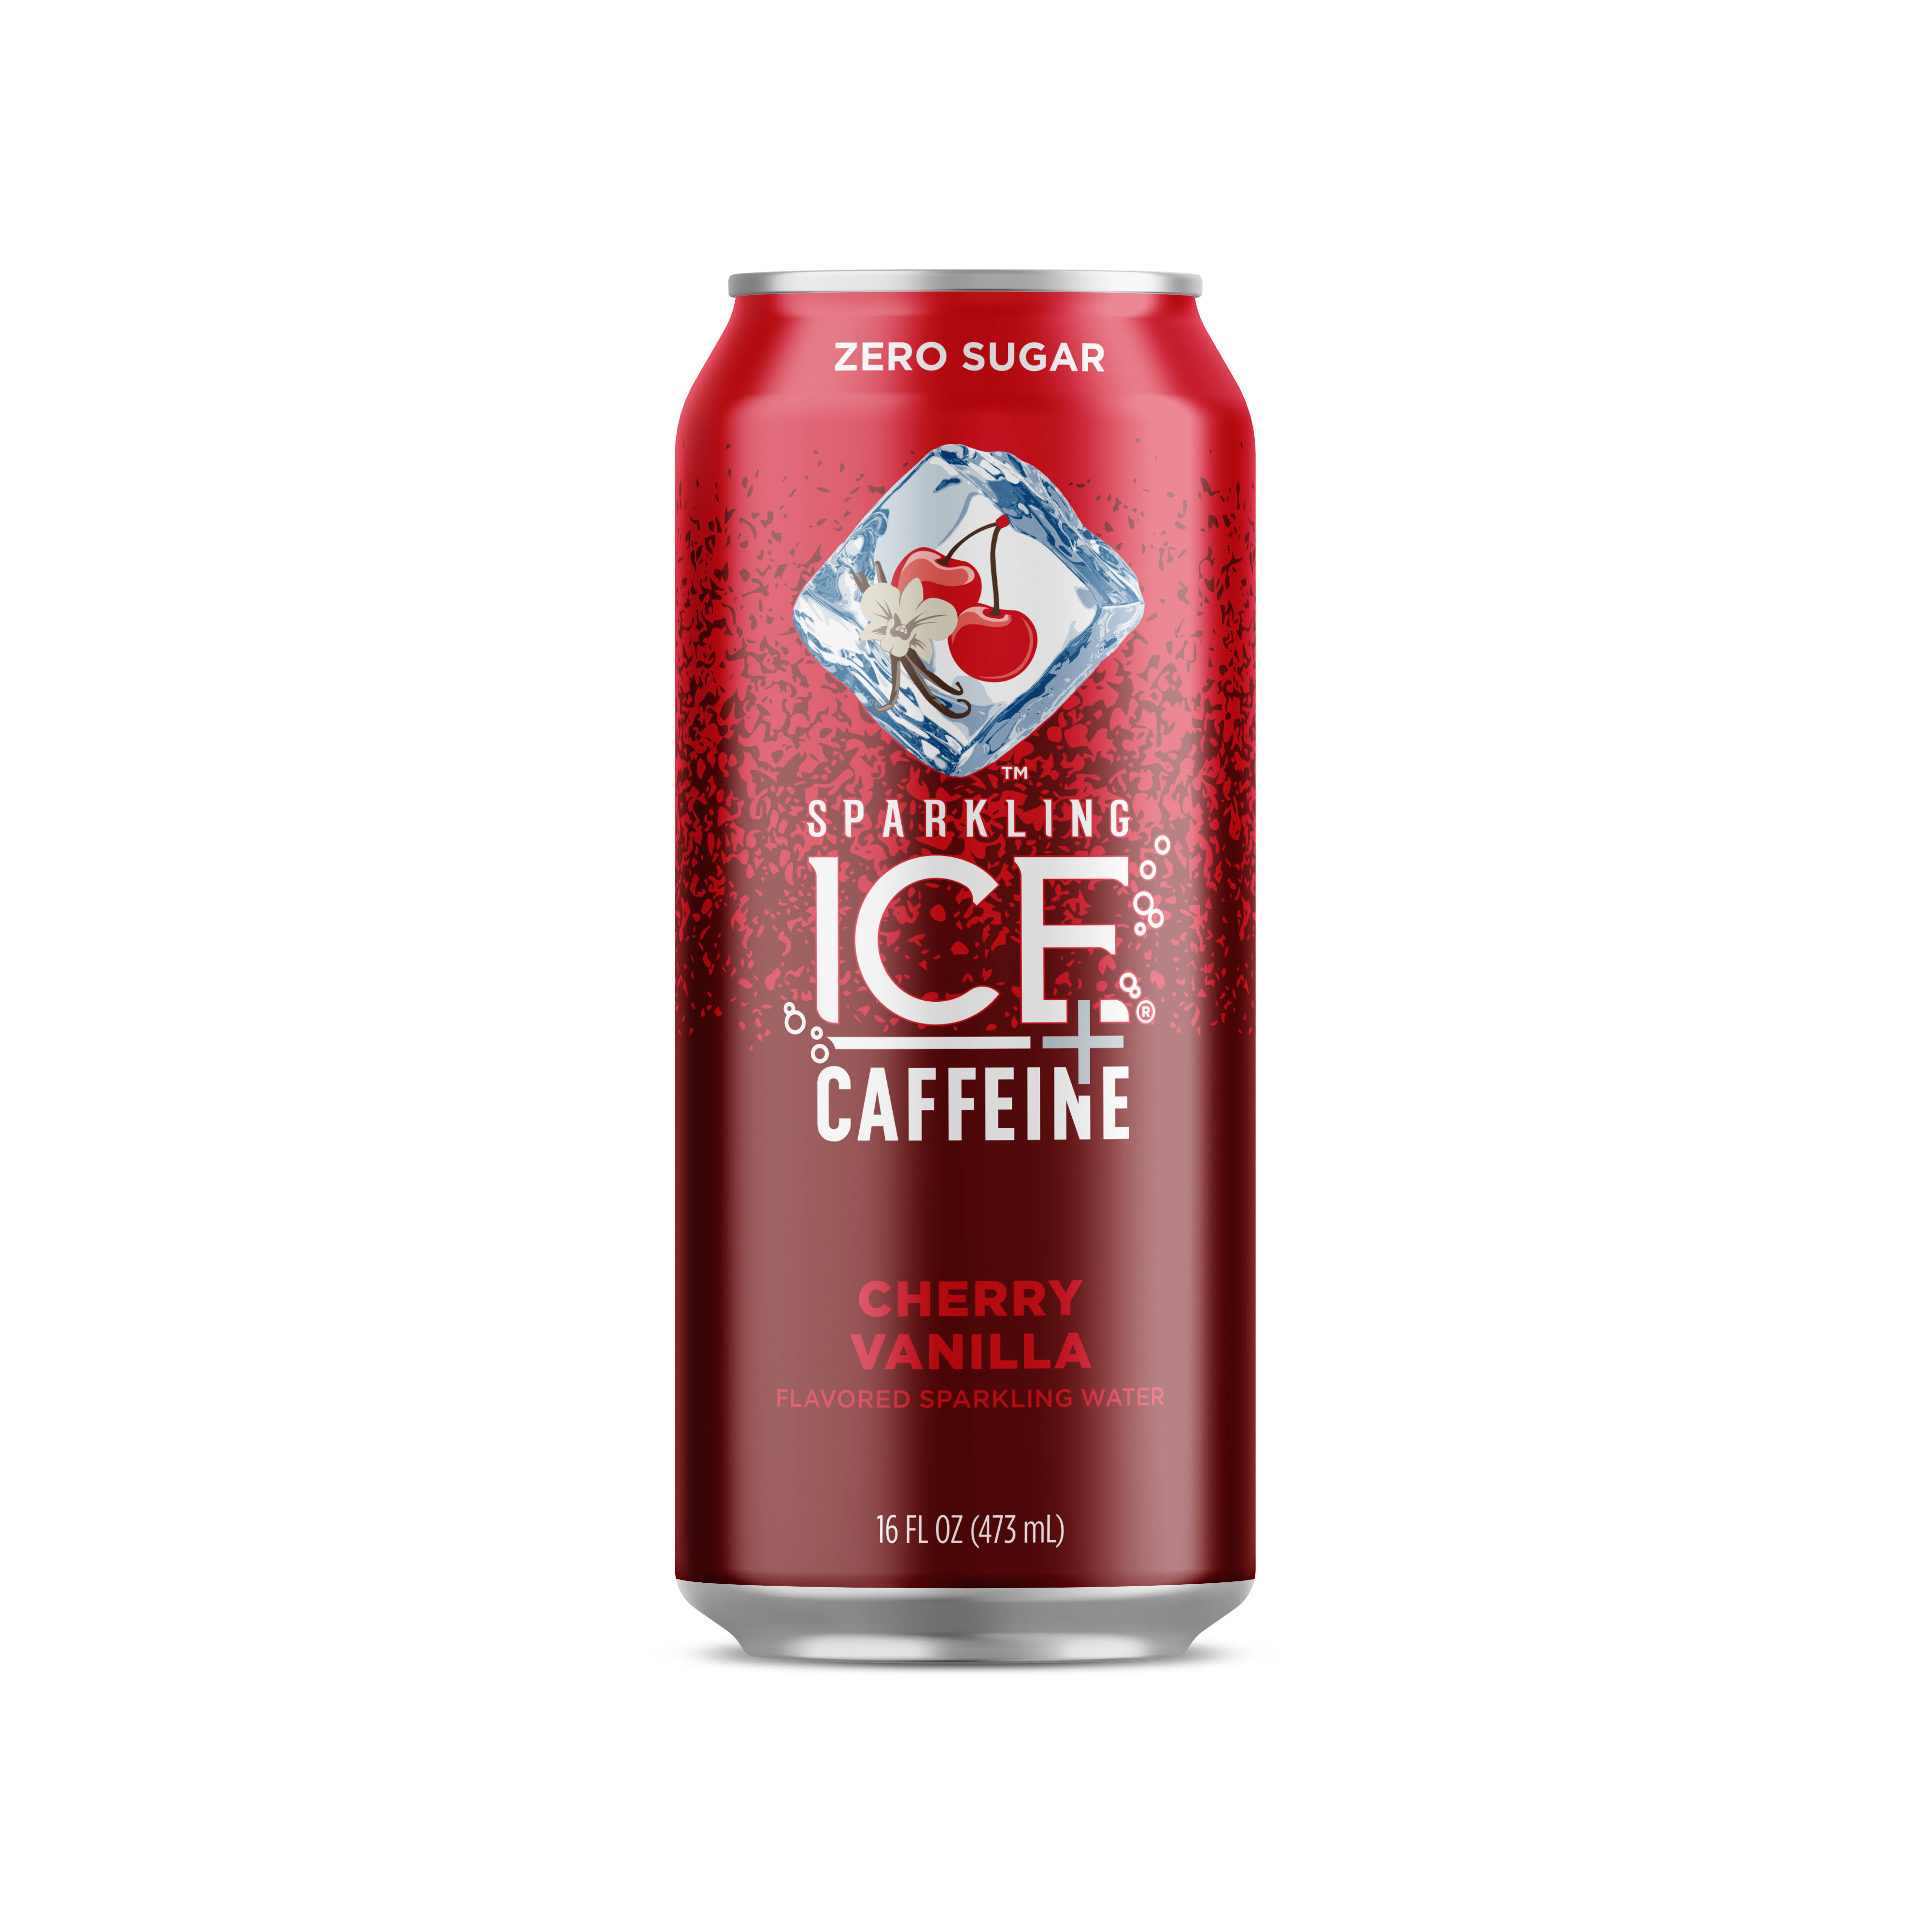 Sparkling Ice +Caffeine Sparkling Water, Zero Sugar, Cherry Vanilla - 16 fl oz